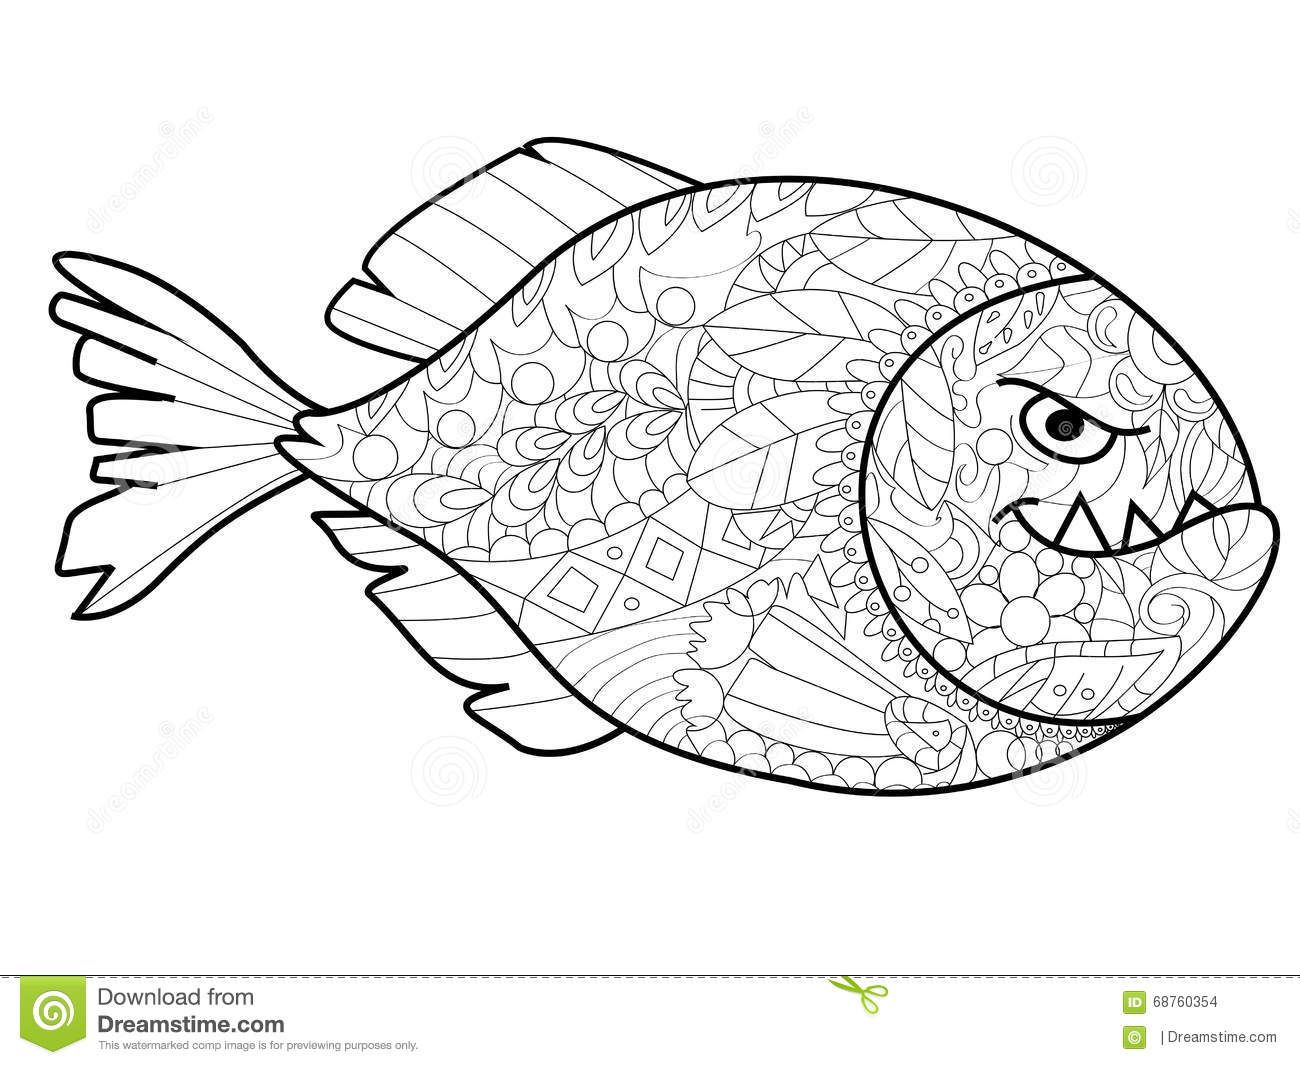 Piranha coloring #12, Download drawings